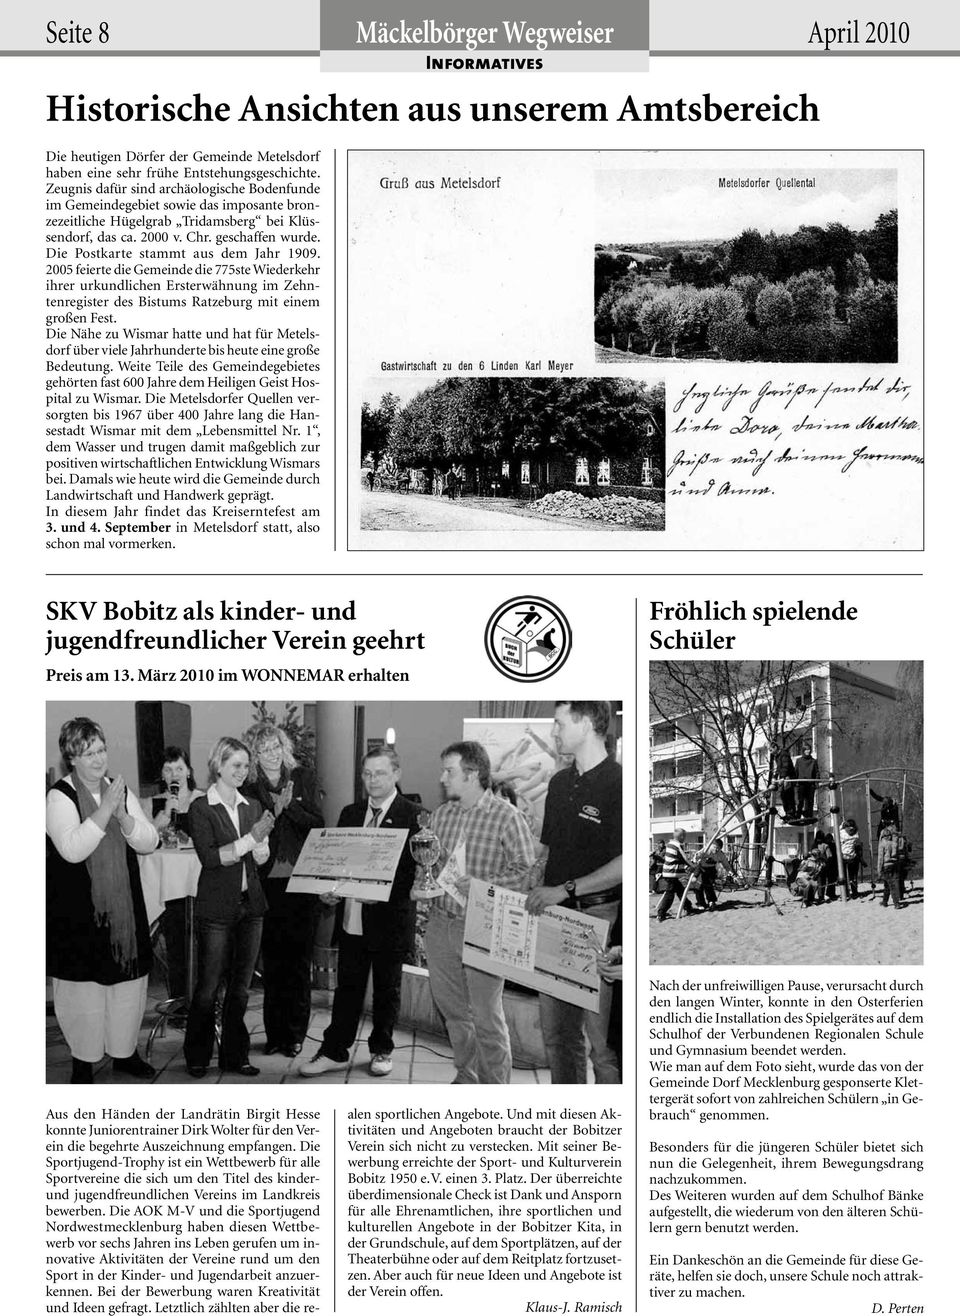 Die Postkarte stammt aus dem Jahr 1909. 2005 feierte die Gemeinde die 775ste Wiederkehr ihrer urkundlichen Ersterwähnung im Zehntenregister des Bistums Ratzeburg mit einem großen Fest.